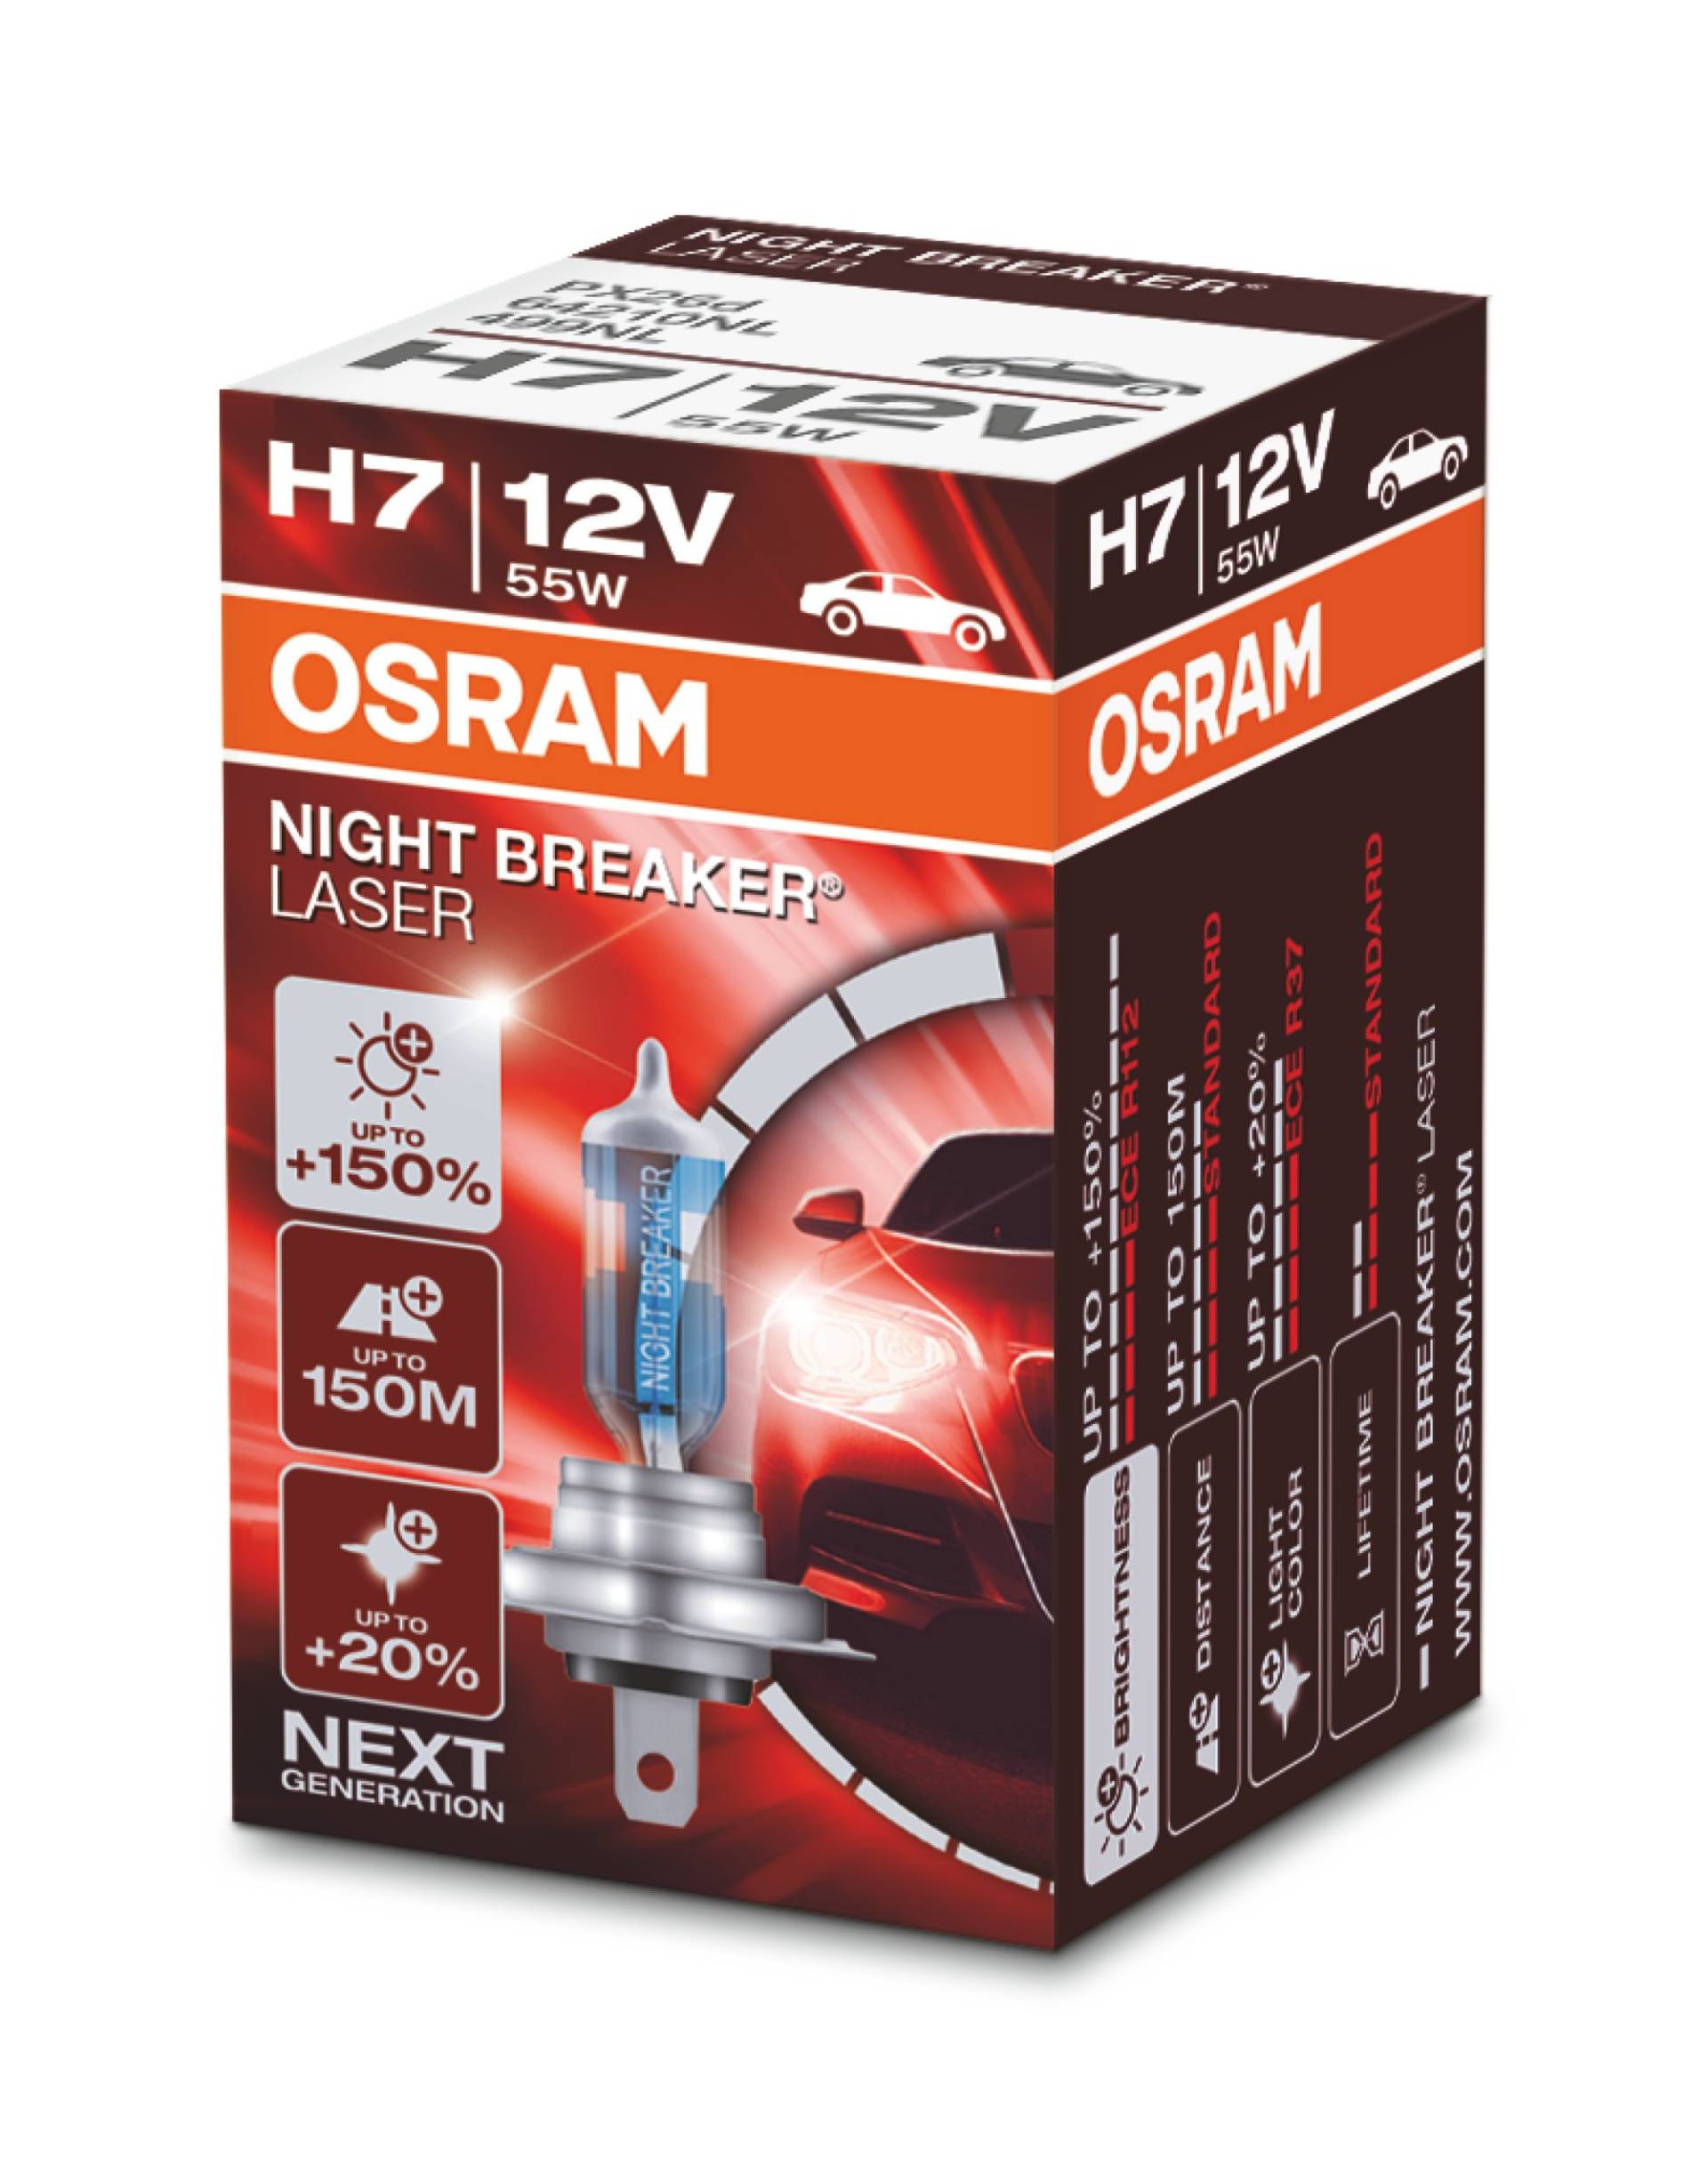 OSRAM NIGHT BREAKER LASER H7, +150% mehr Helligkeit, Halogen-Scheinwerferlampe, 64210NL, 12V PKW, Faltschachtel (1 Lampe) von Osram